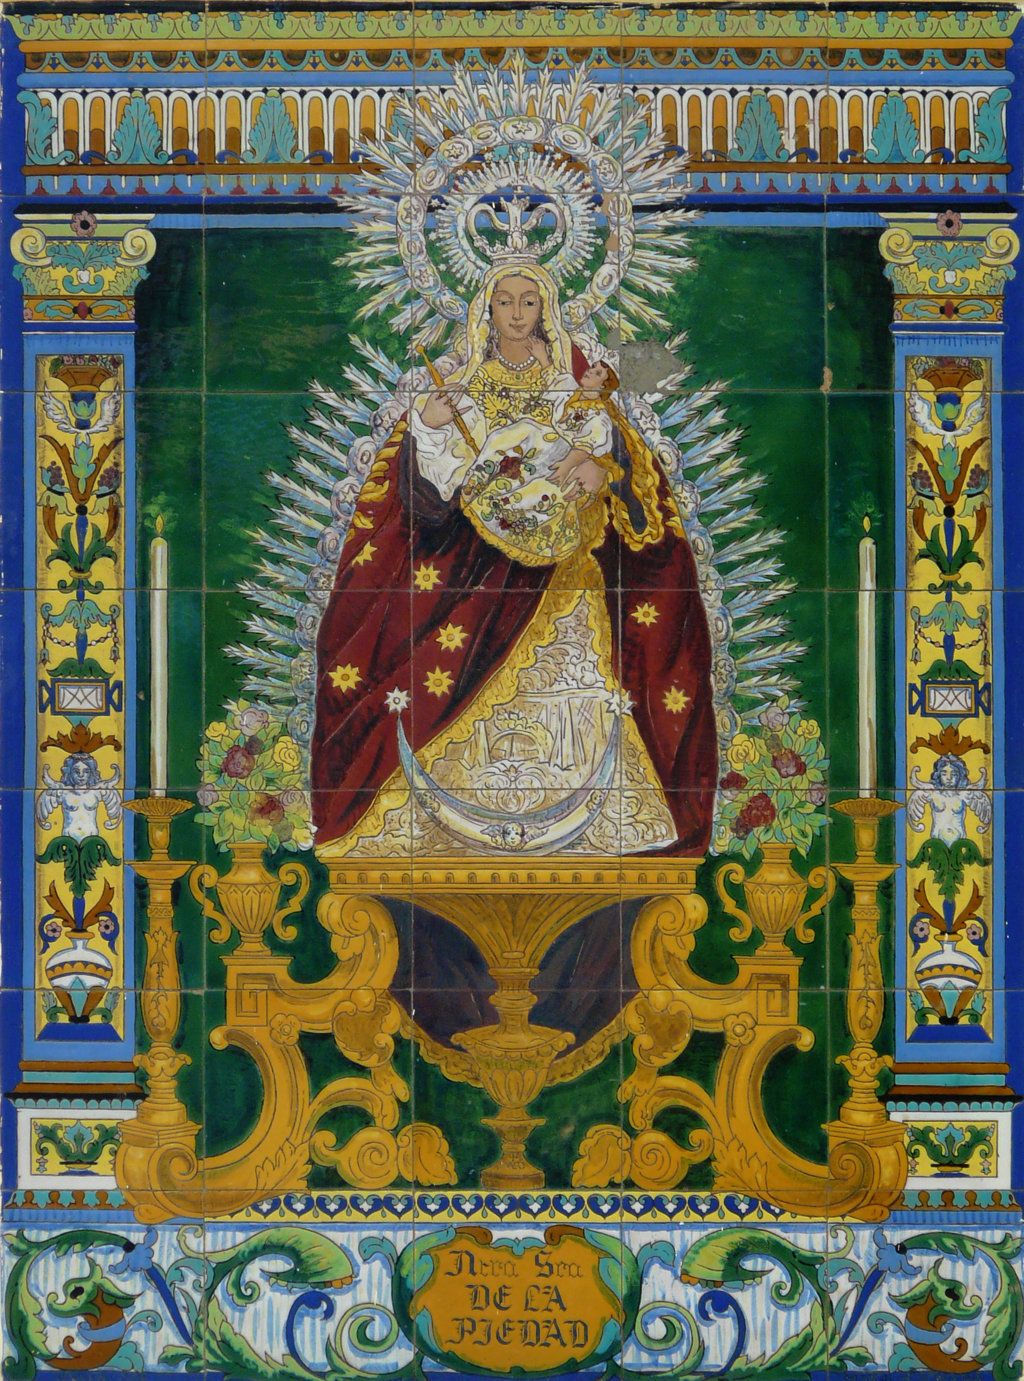 03019. Retablo cerámico. Virgen de la Piedad. Almendralejo. Badajoz.